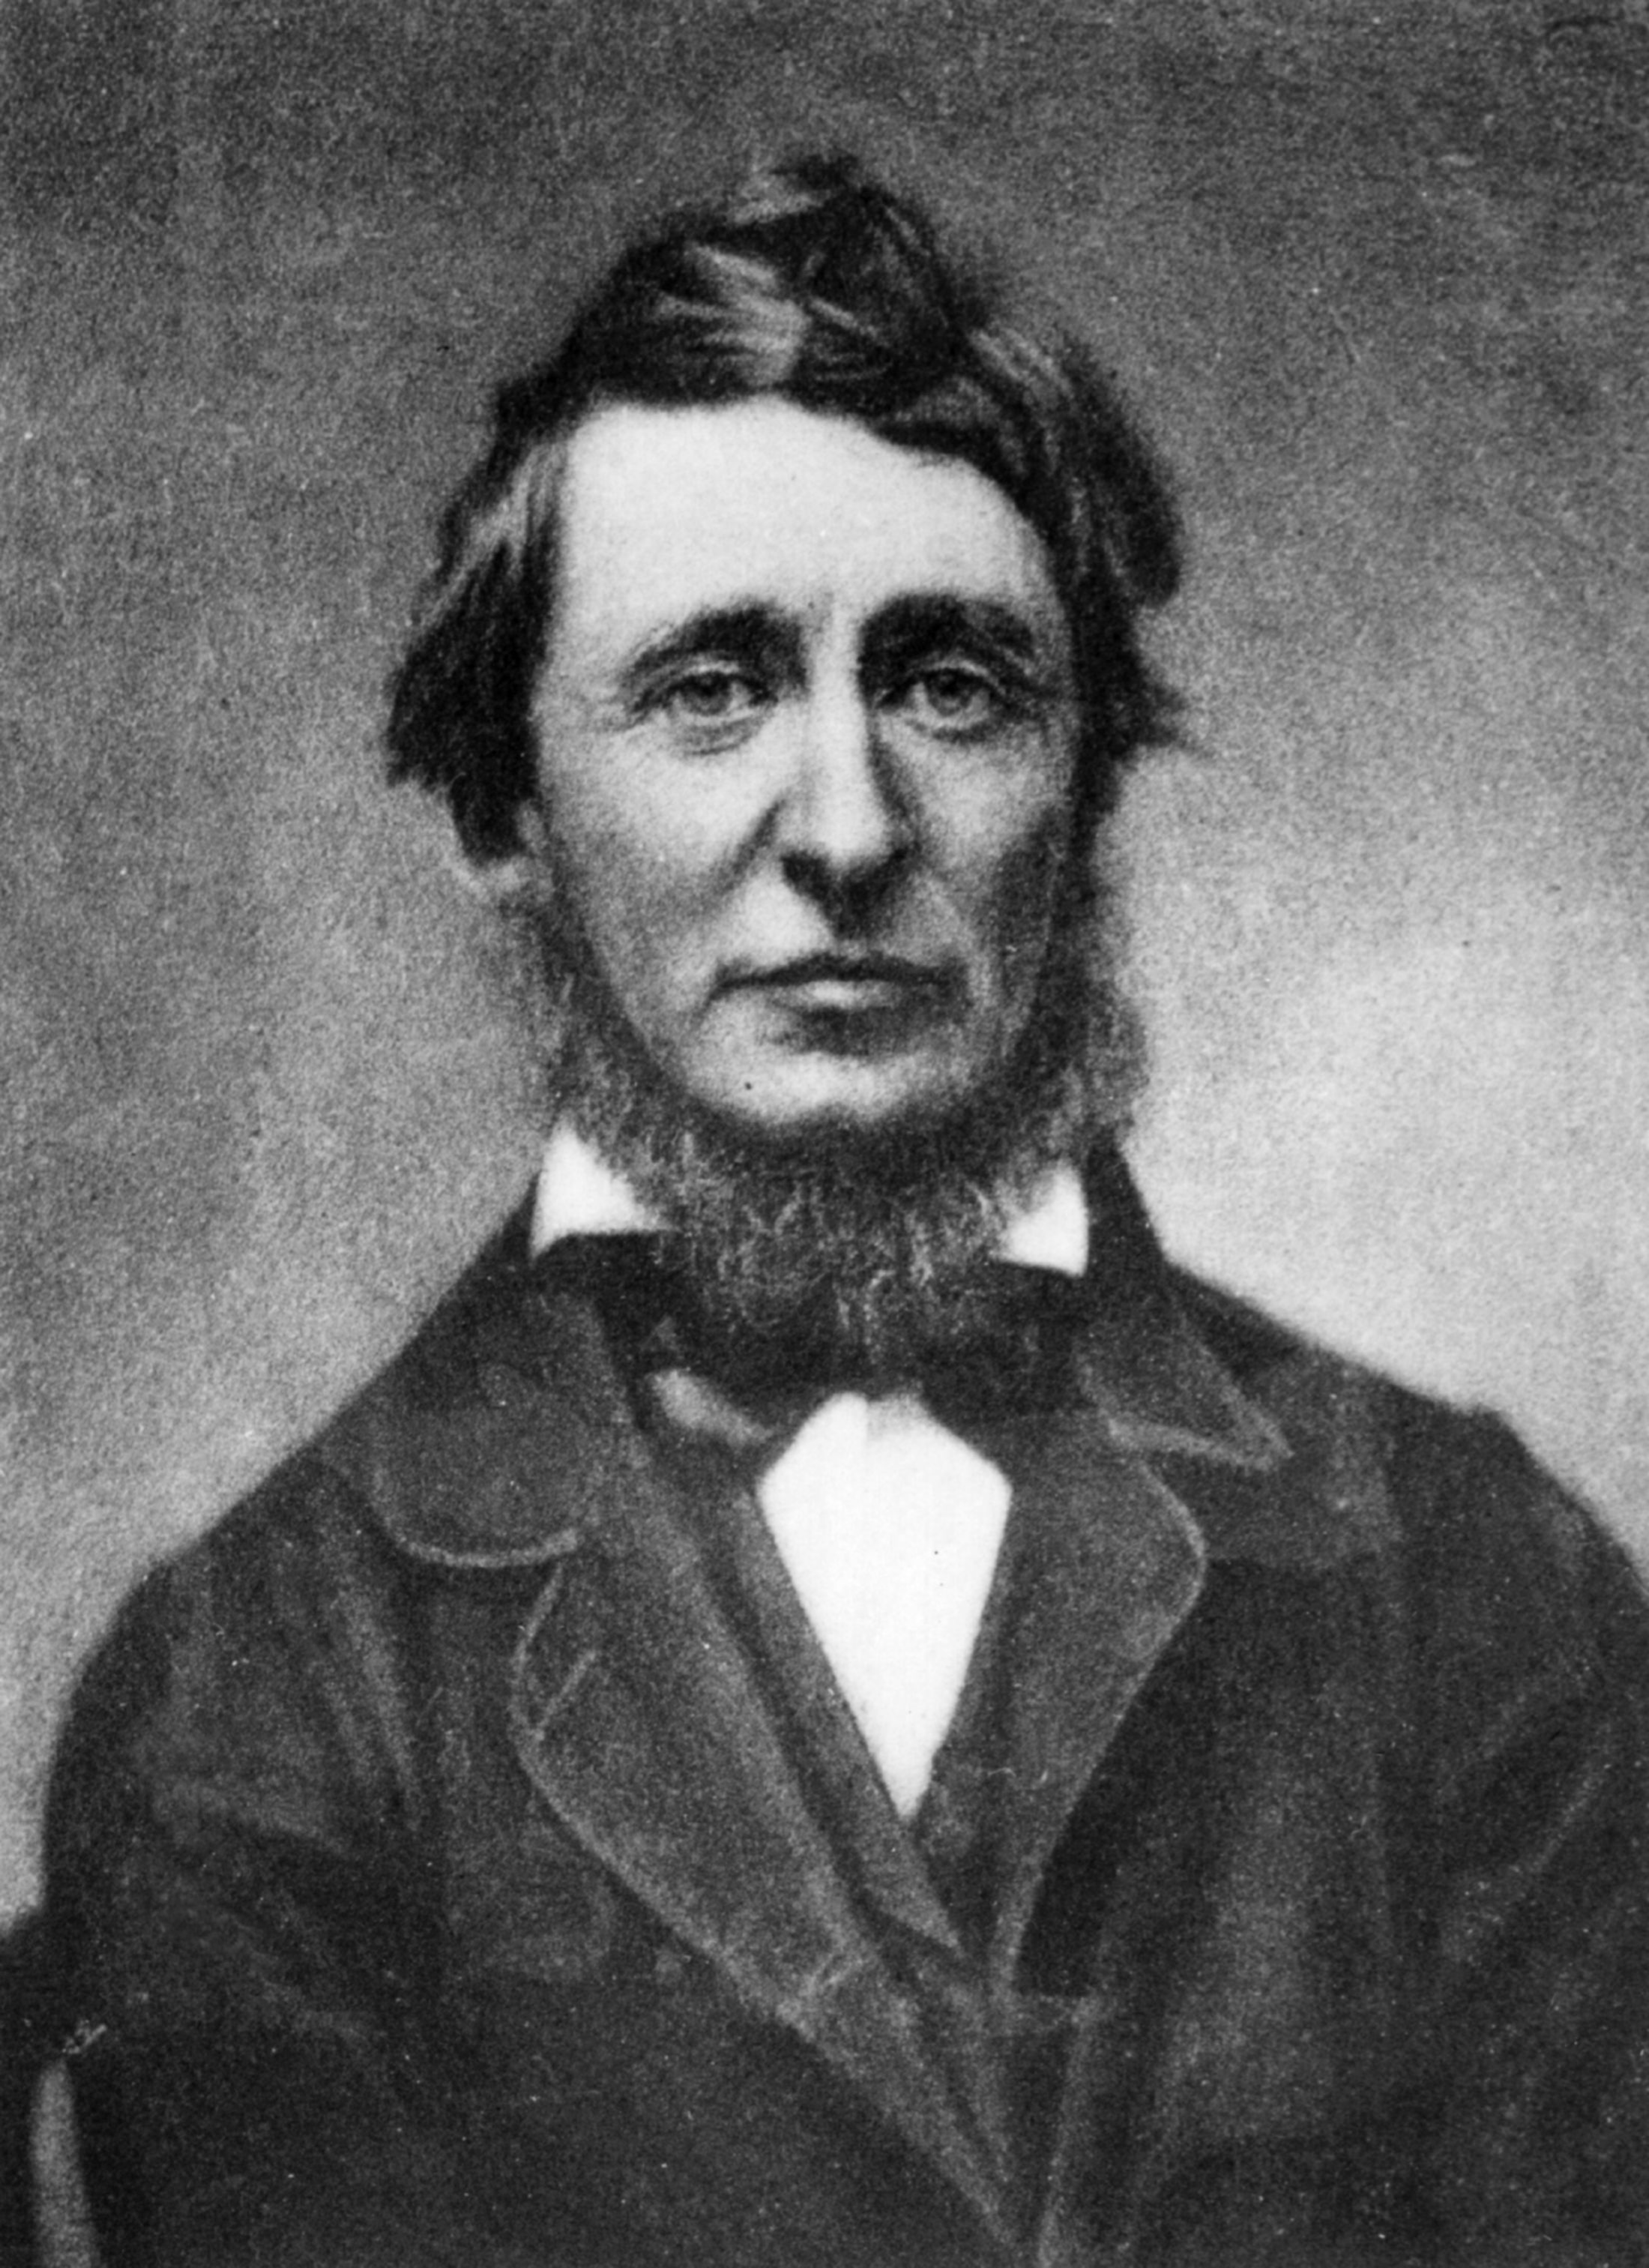 Henry David Thoreau publishes Walden